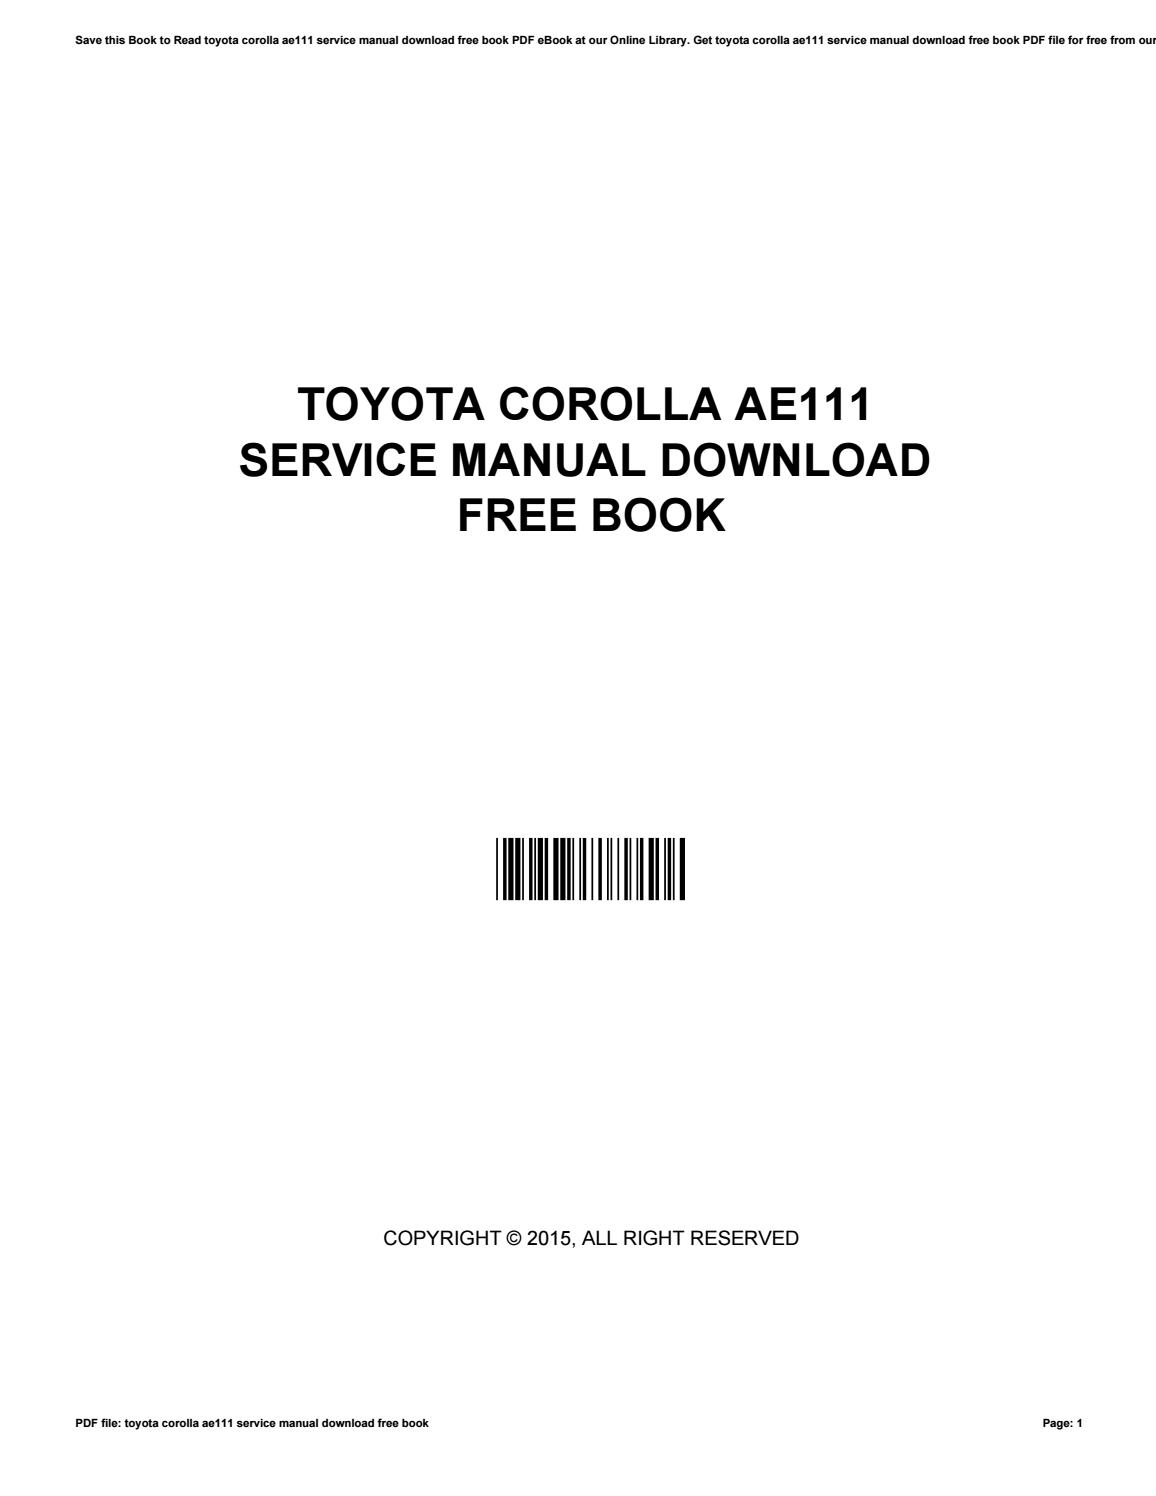 1995 Toyota Corolla Manual Book Free Download